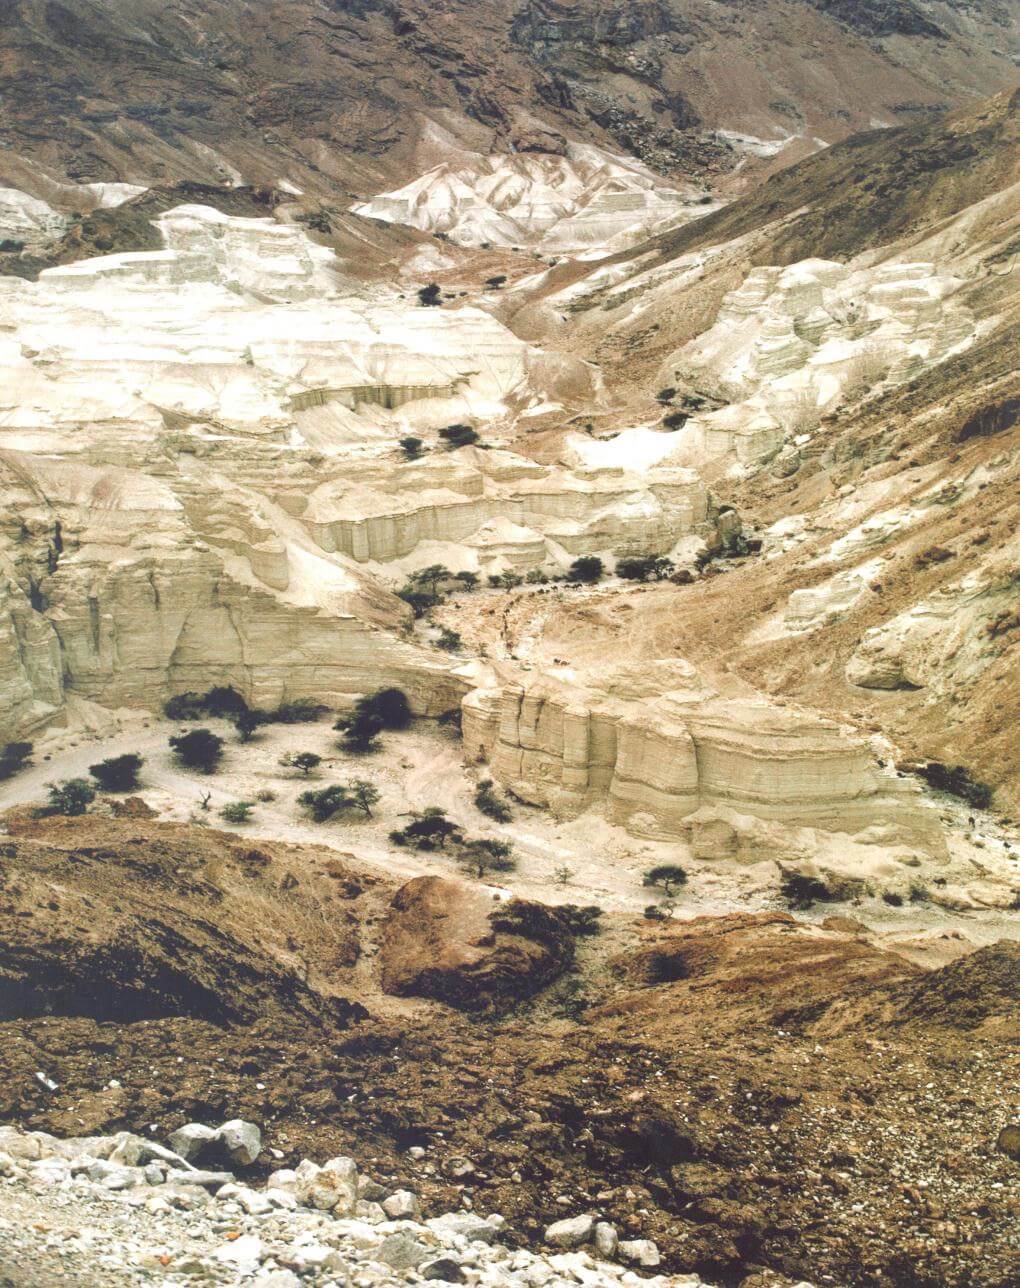 Desert landscape. Photo: Prof. Zvi Dubinsky, Bar-Ilan University